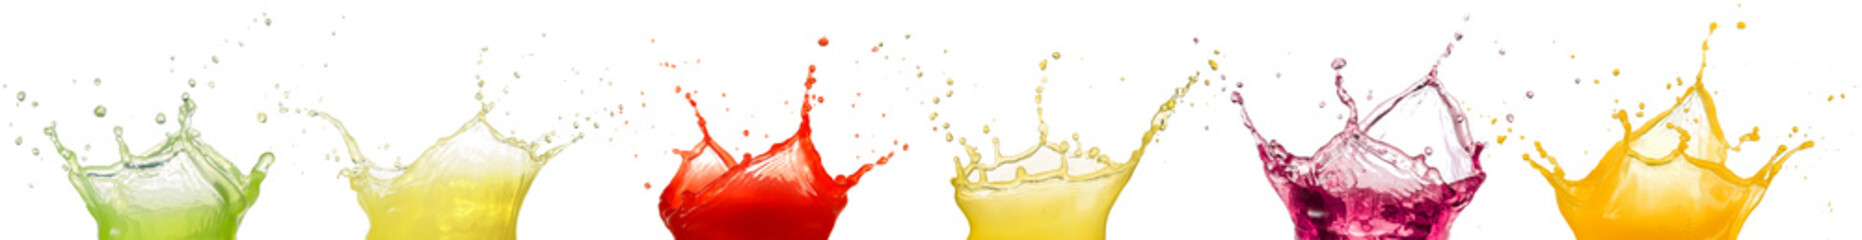 fruit juice splashes isolated on white background © popout